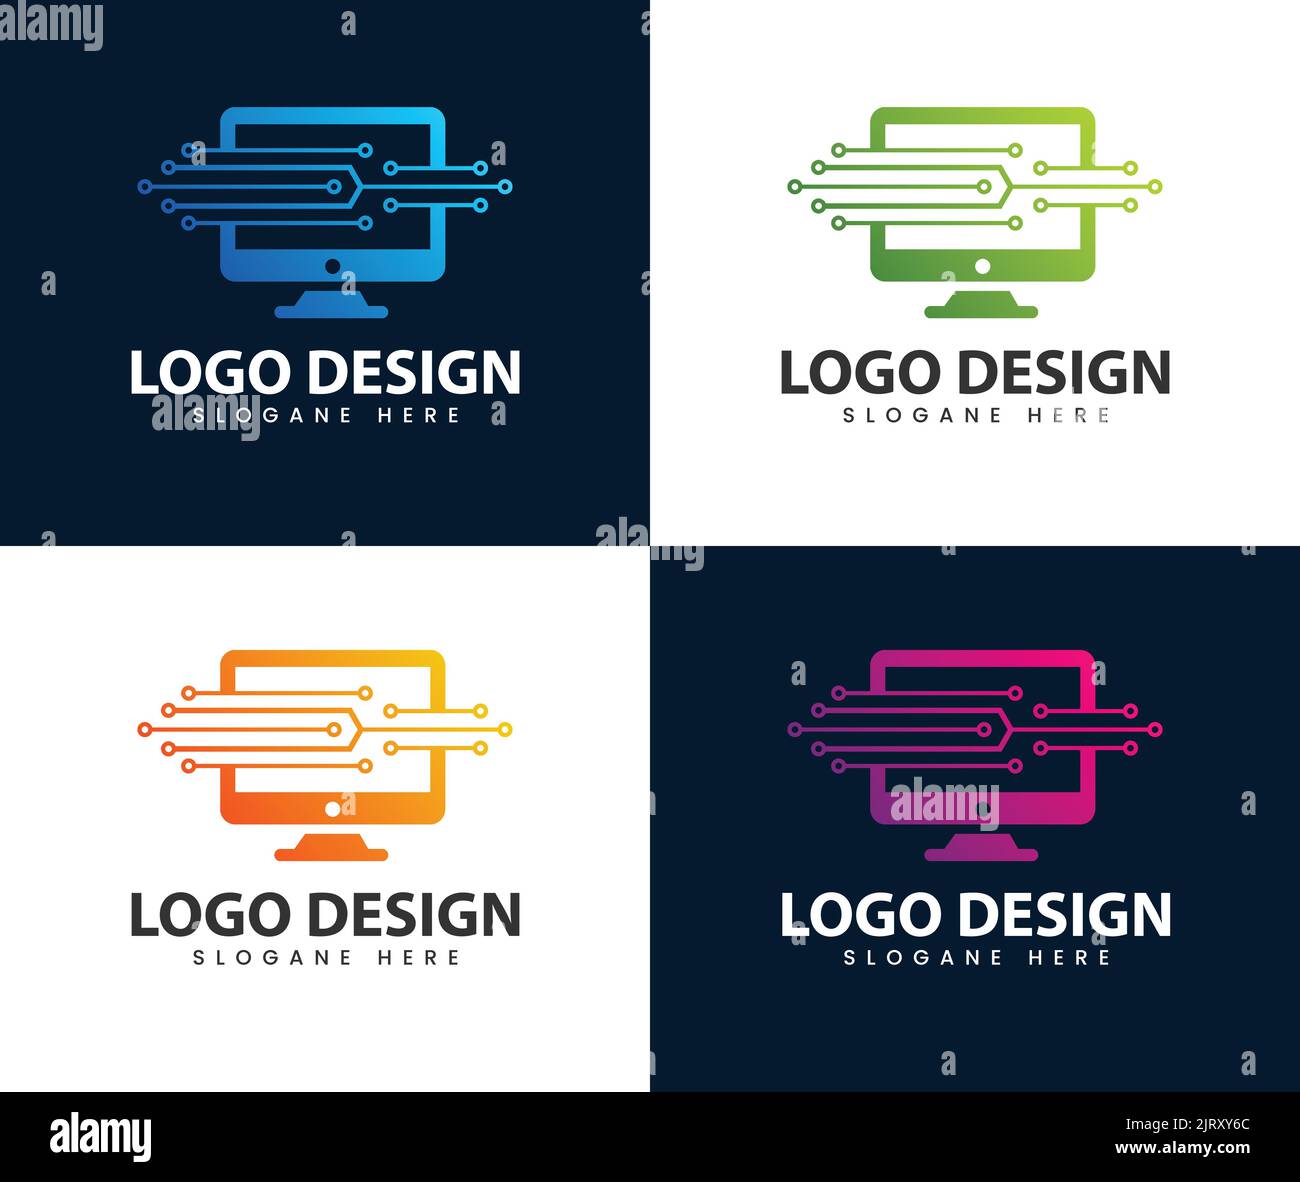 Modelli di logo per la tecnologia informatica, modelli di logo per i servizi informatici, ispirazione per il design di logo per l'idea tecnologica informatica. Illustrazione Vettoriale